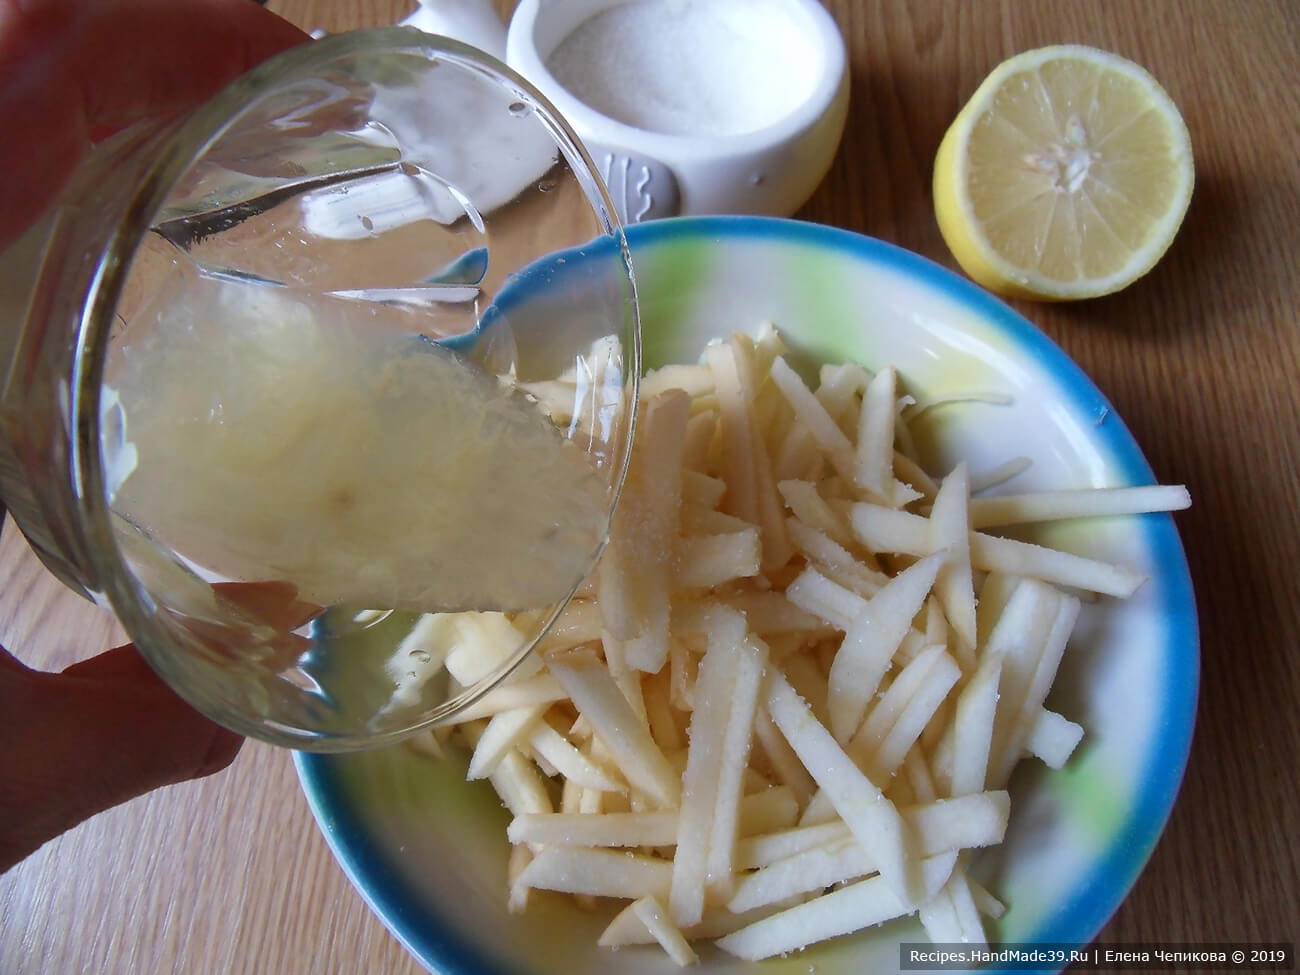 Соединить яблоко и лук в глубокой тарелке, посыпать сахаром и залить лимонным соком (или уксусом)